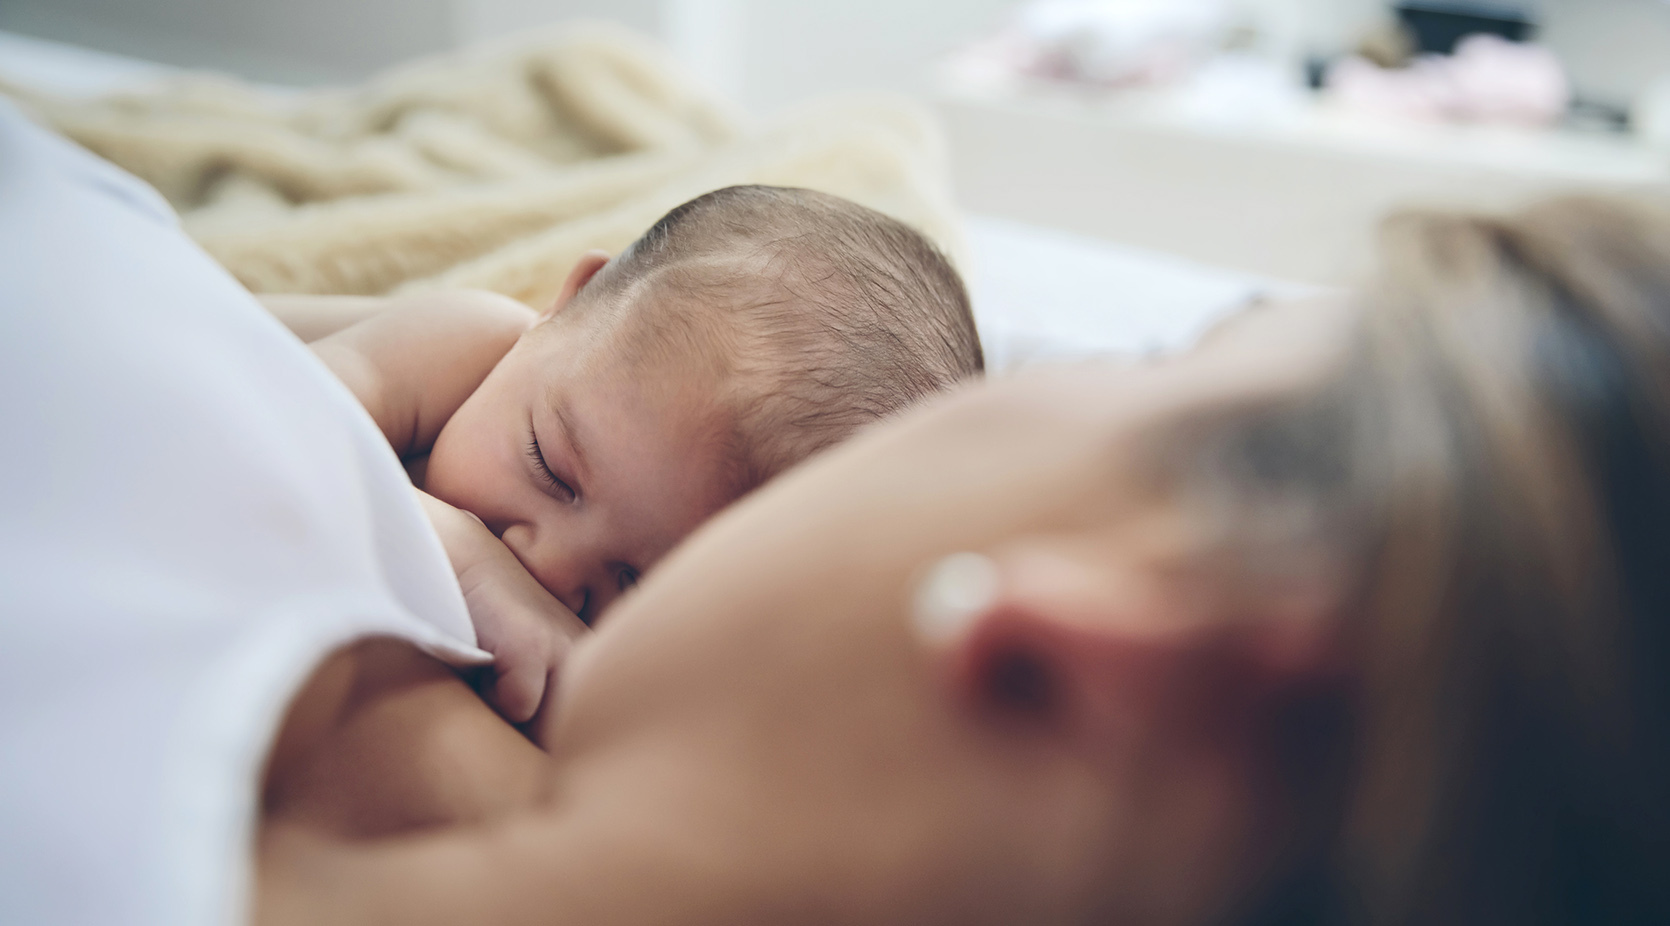 Obkurczanie macicy po porodzie – jak wygląda, ile trwa? / istock